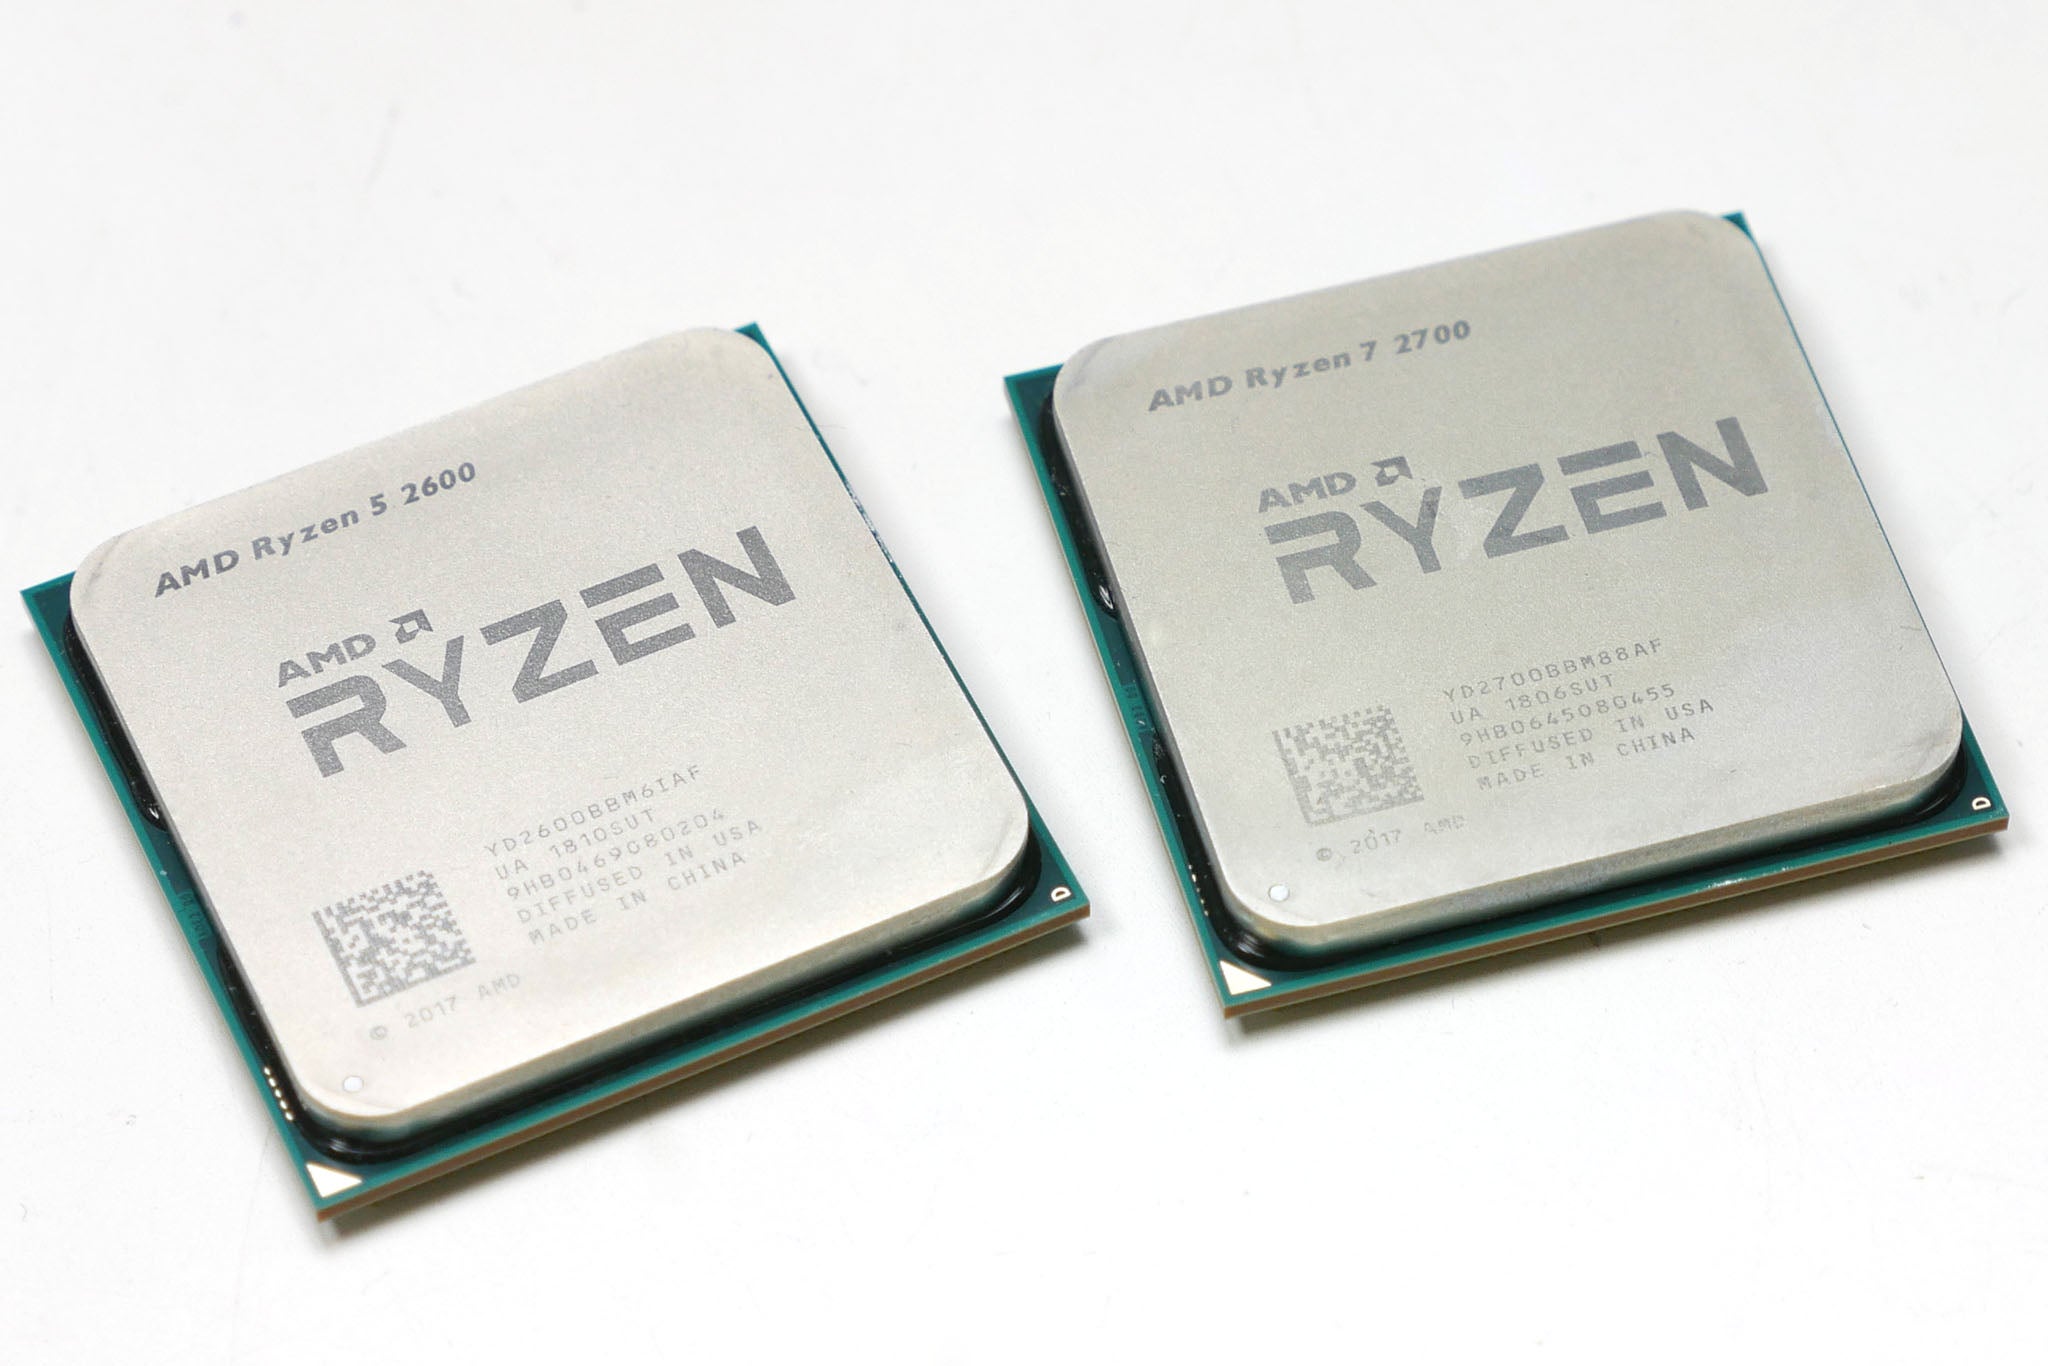 Райзен 9 купить. AMD Ryzen 5 2600. AMD 2700x. Процессор AMD Ryzen 7 Pro 2700. Процессор AMD Ryzen 5 Pro 2600.